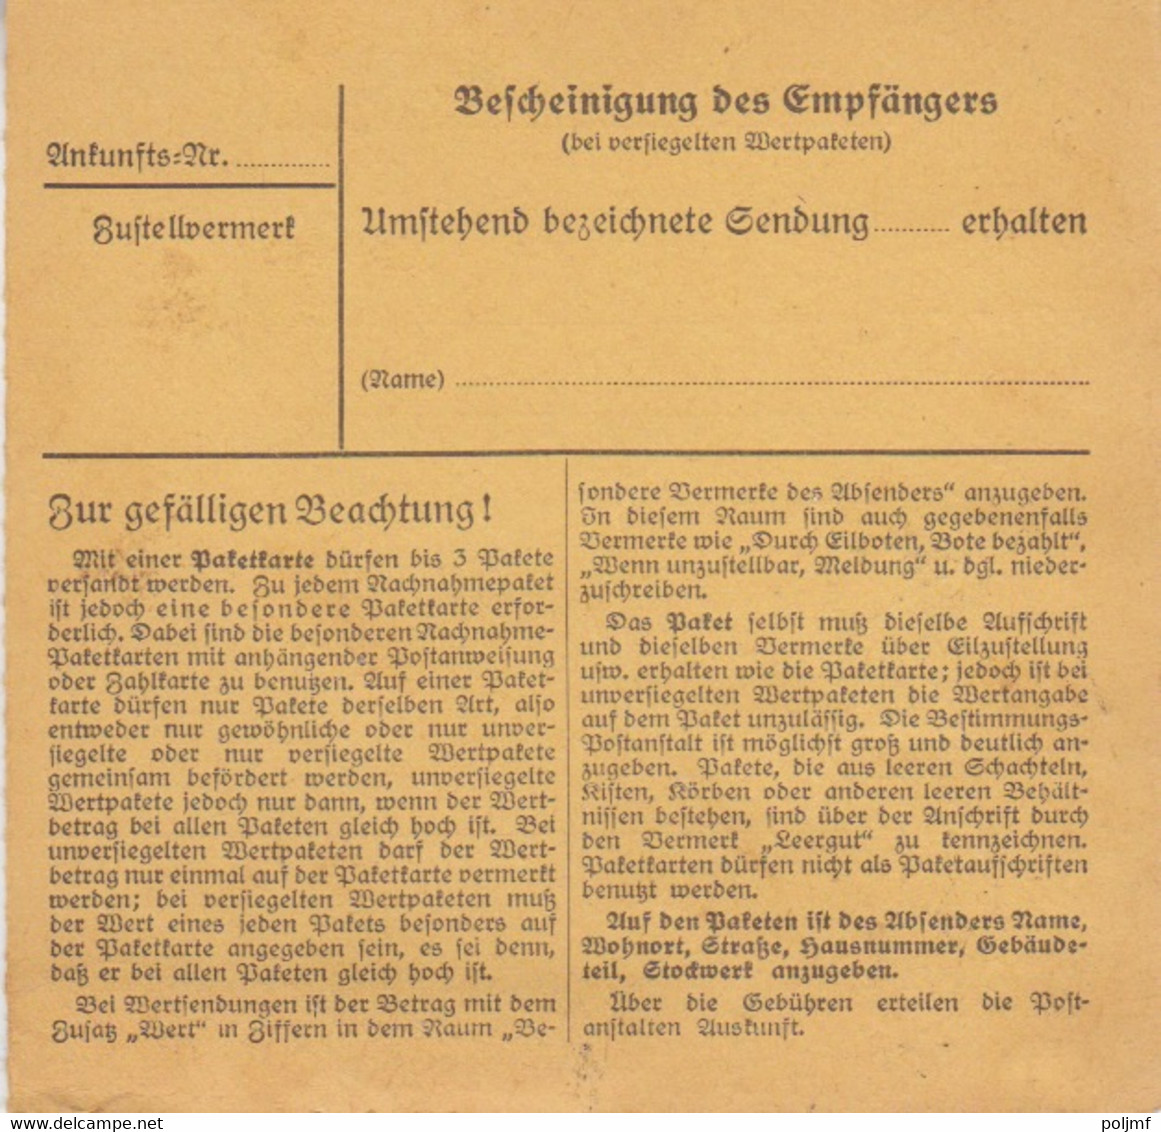 Bulletin D'expédition De Luxembourg 1c (T329) Sur TP Reich 15 + 60pf = 1°éch Le 4/6/42 Pour Strasbourg - 1940-1944 Occupation Allemande